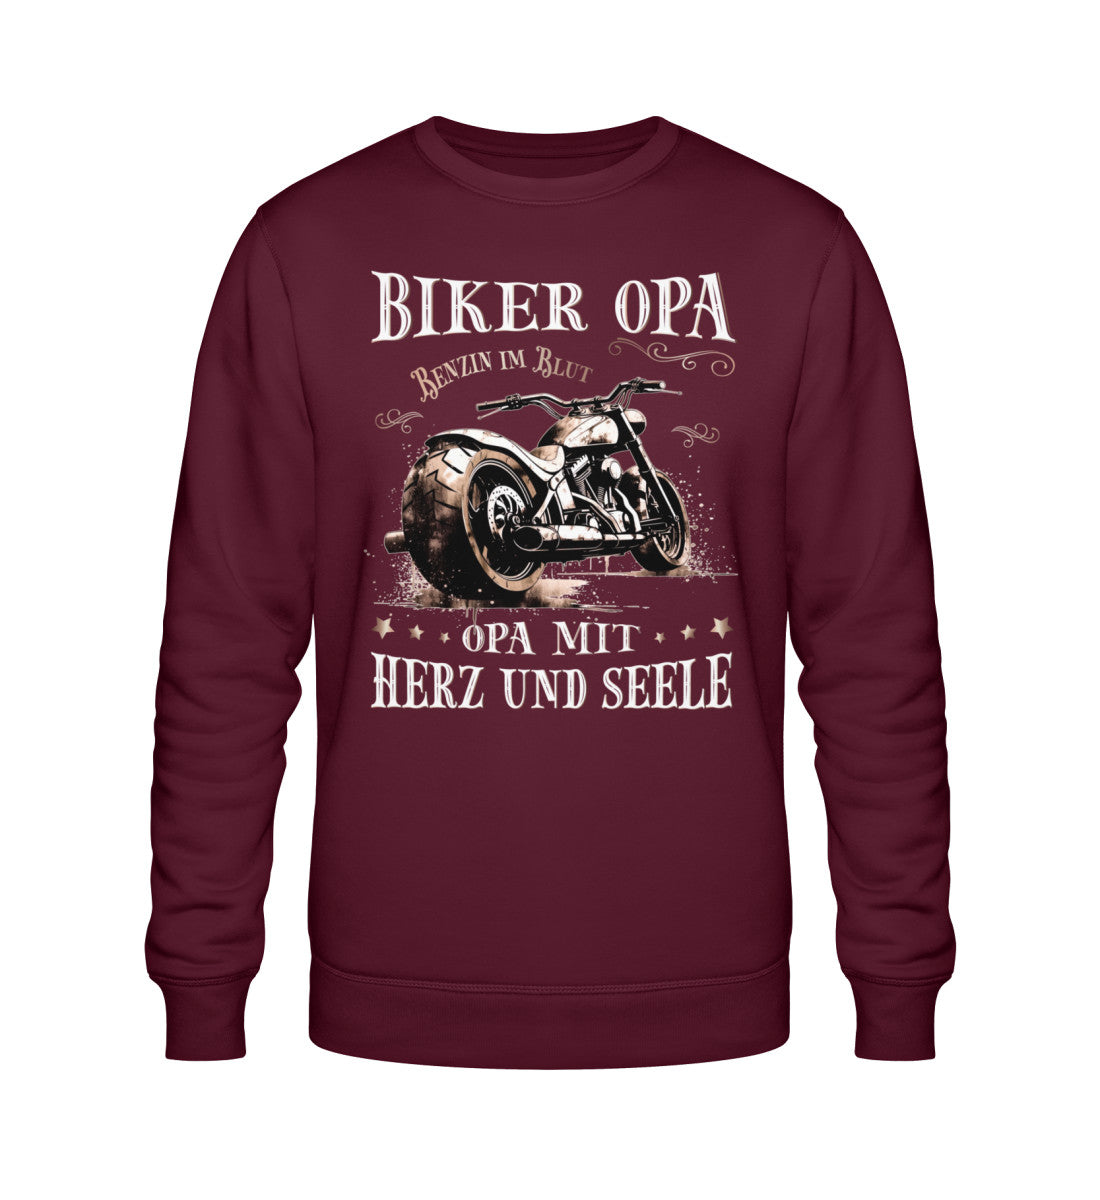 Ein Biker Sweatshirt für Motorradfahrer von Wingbikers mit dem Aufdruck, Biker Opa - Benzin im Blut - Opa mit Herz und Seele, in burgunder weinrot.